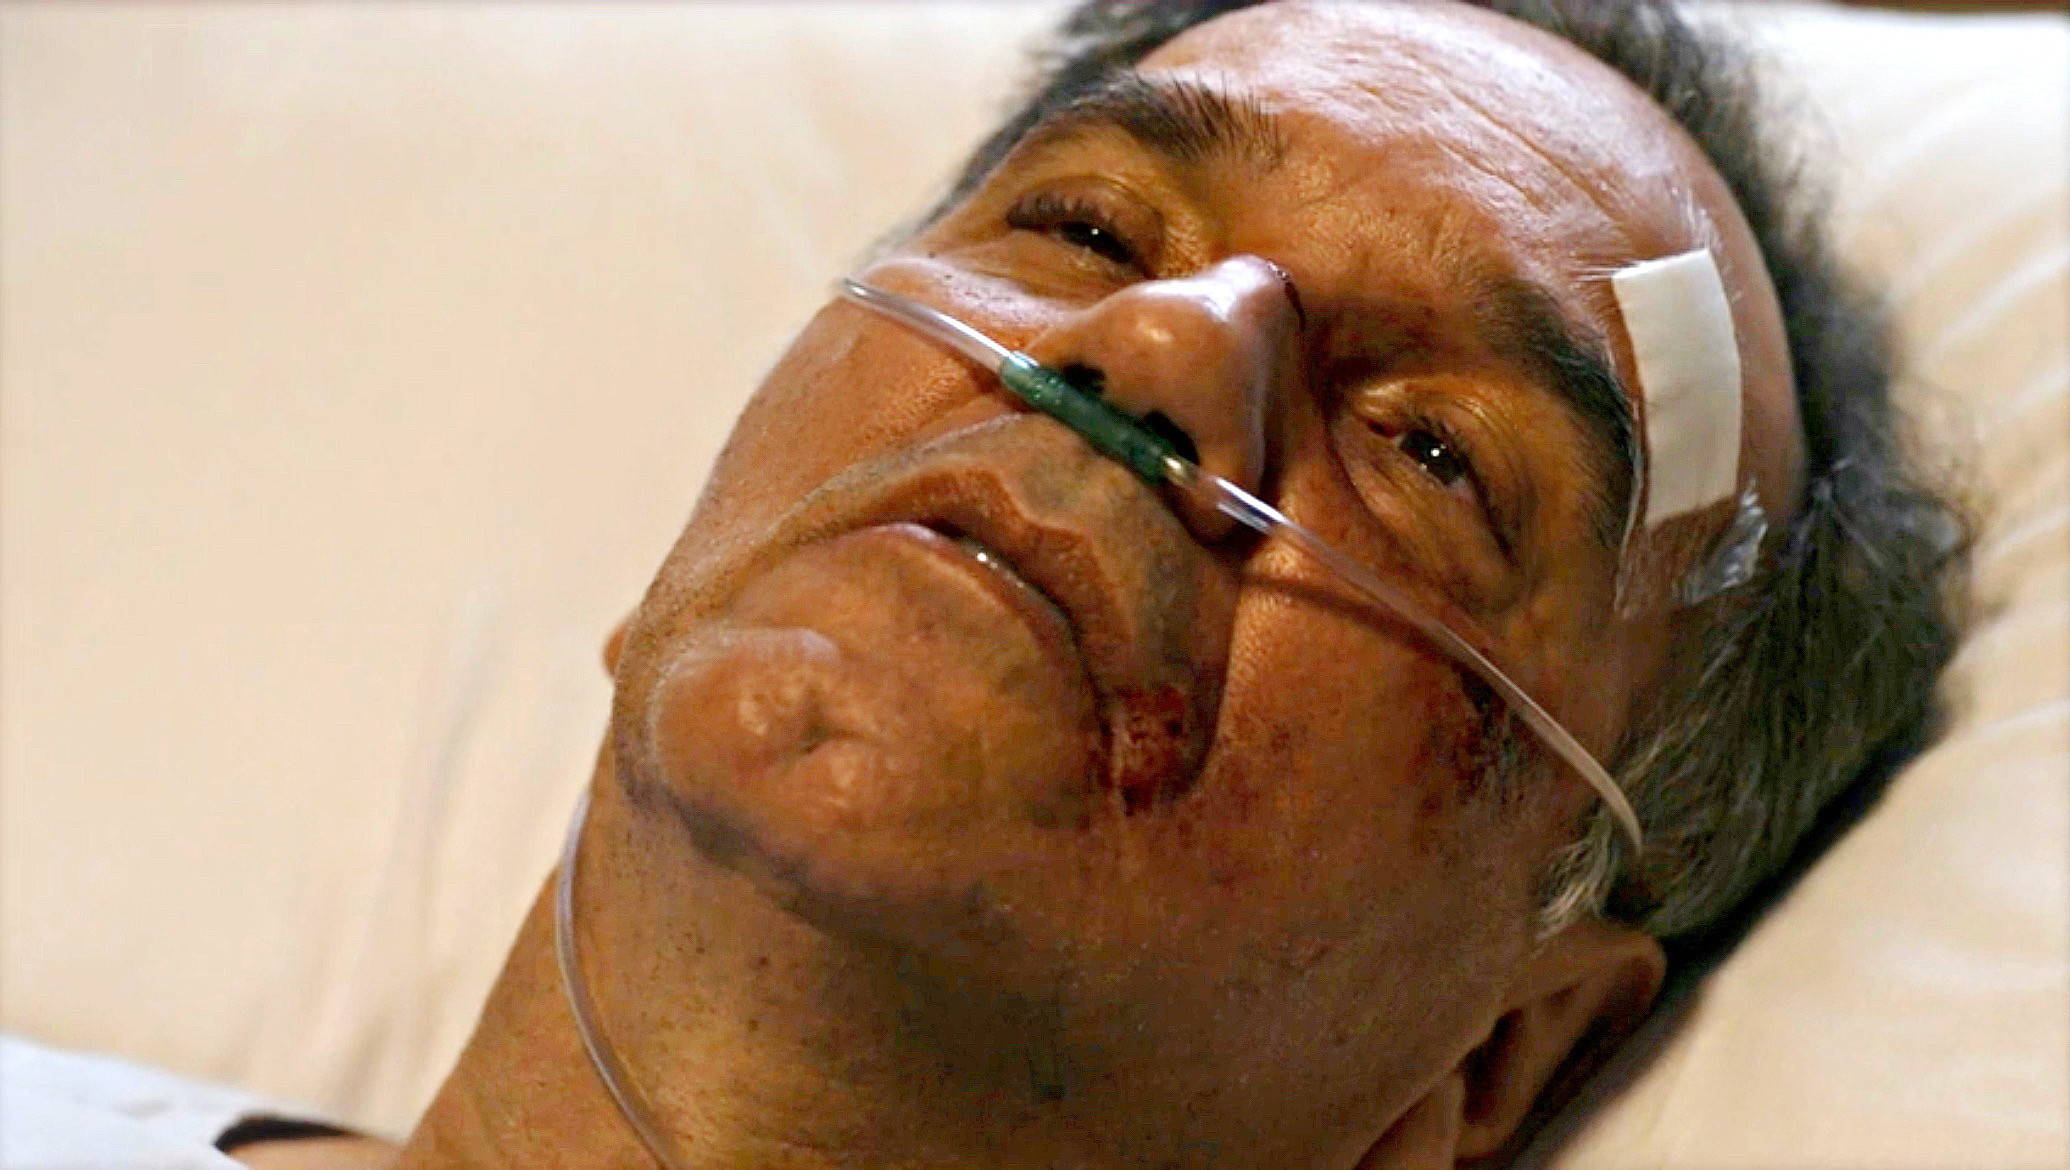 Na novela Travessia, Guerra, personagem de Humberto Martins, aparece em uma cama de hospital, com ferimentos no rosto e respirando com a ajuda de cilindro de oxigênio.